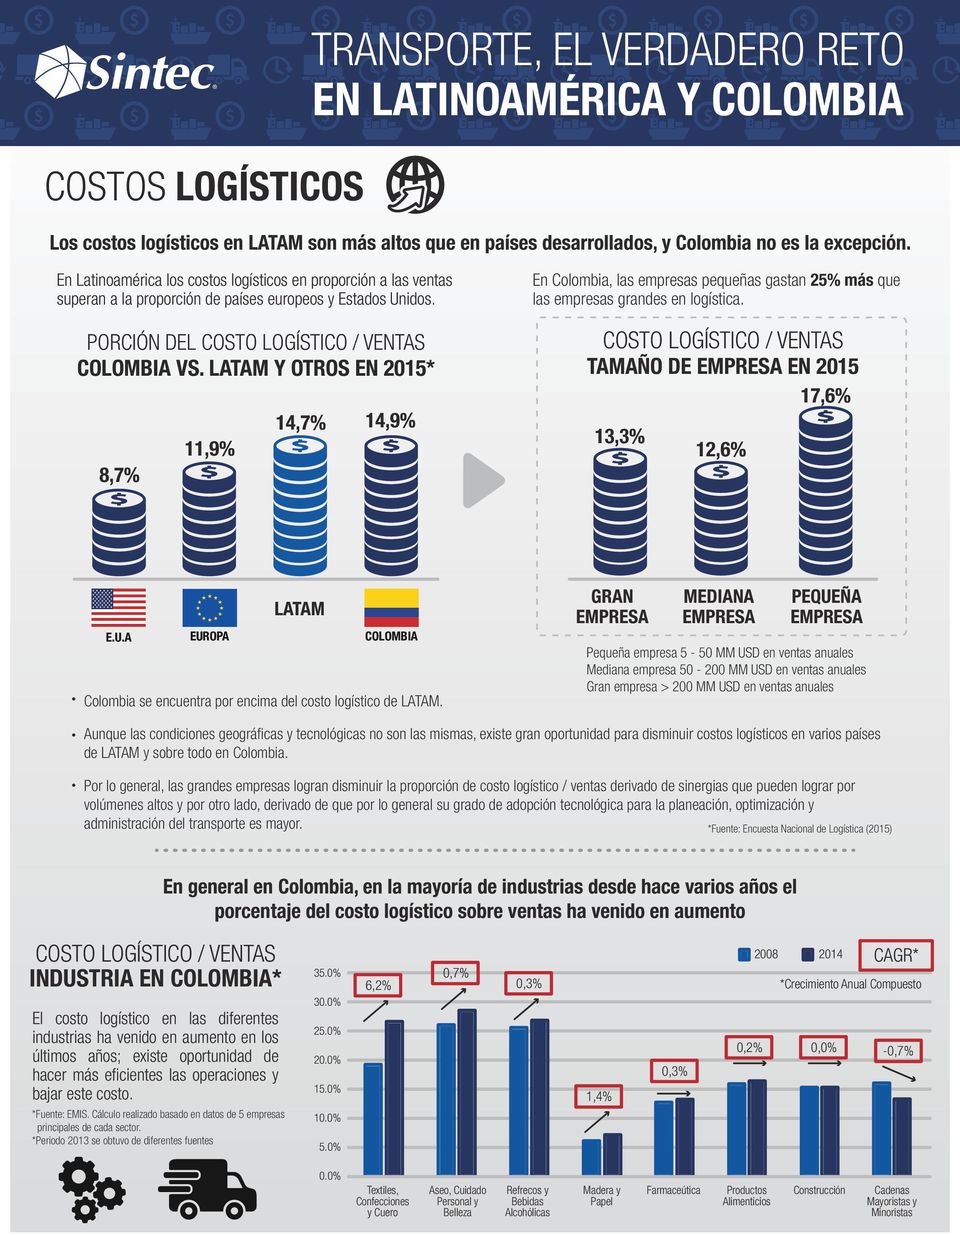 En Colombia, las empresas pequeñas gastan más que las empresas grandes en logística. COSTO LOGÍSTICO / VENTAS PORCIÓN DEL COSTO LOGÍSTICO / VENTAS VS.